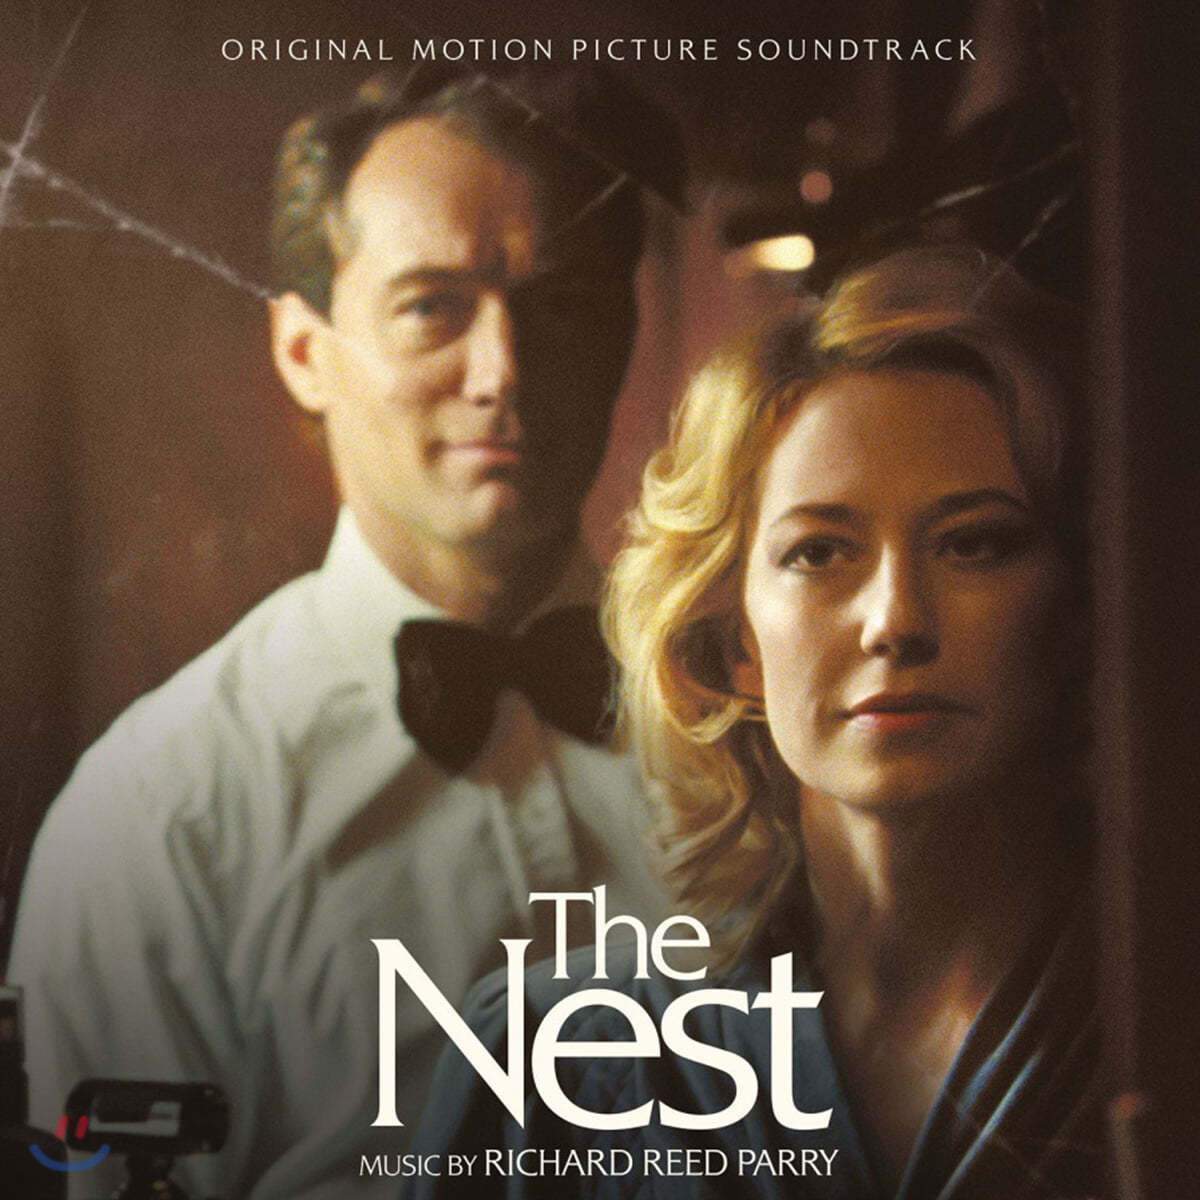 더 네스트 영화음악 (The Nest OST by Richard Reed Parry 리차드 리드 패리) [크리스탈 클리어 컬러 LP] 